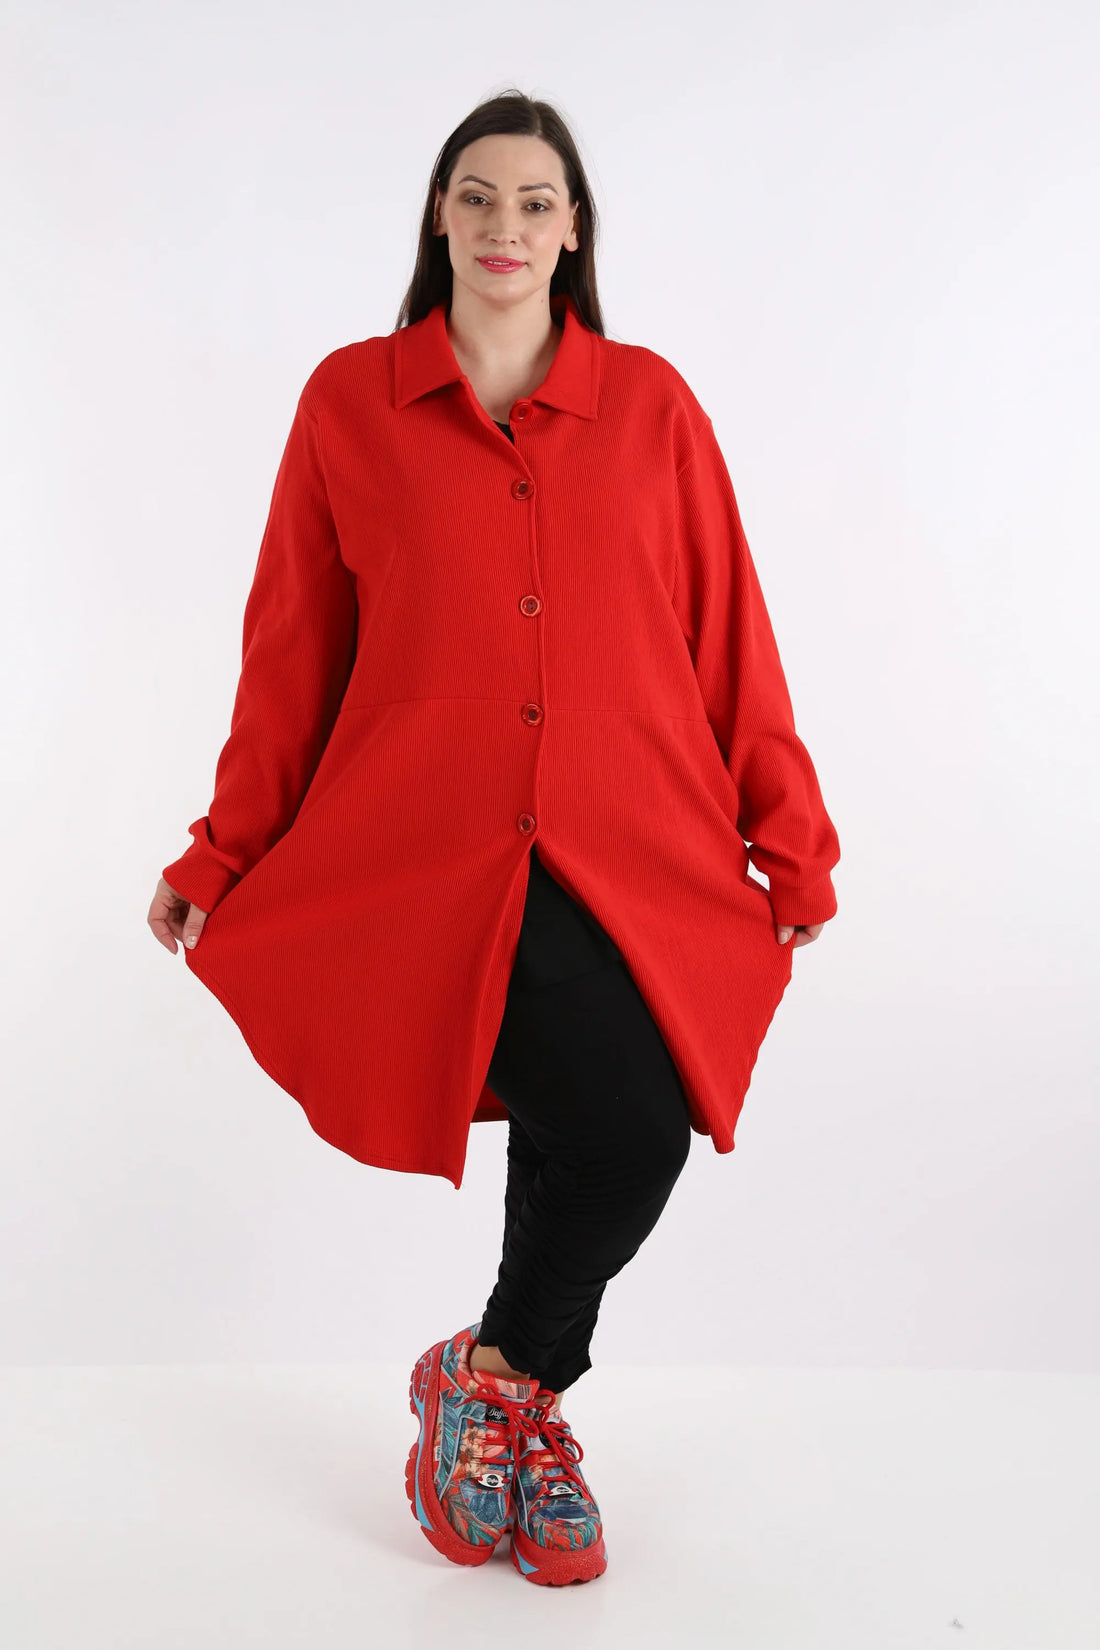 Bluse von AKH Fashion aus Baumwolle in gerundeter Form, 1252.06881, Rot, Schick, Modern